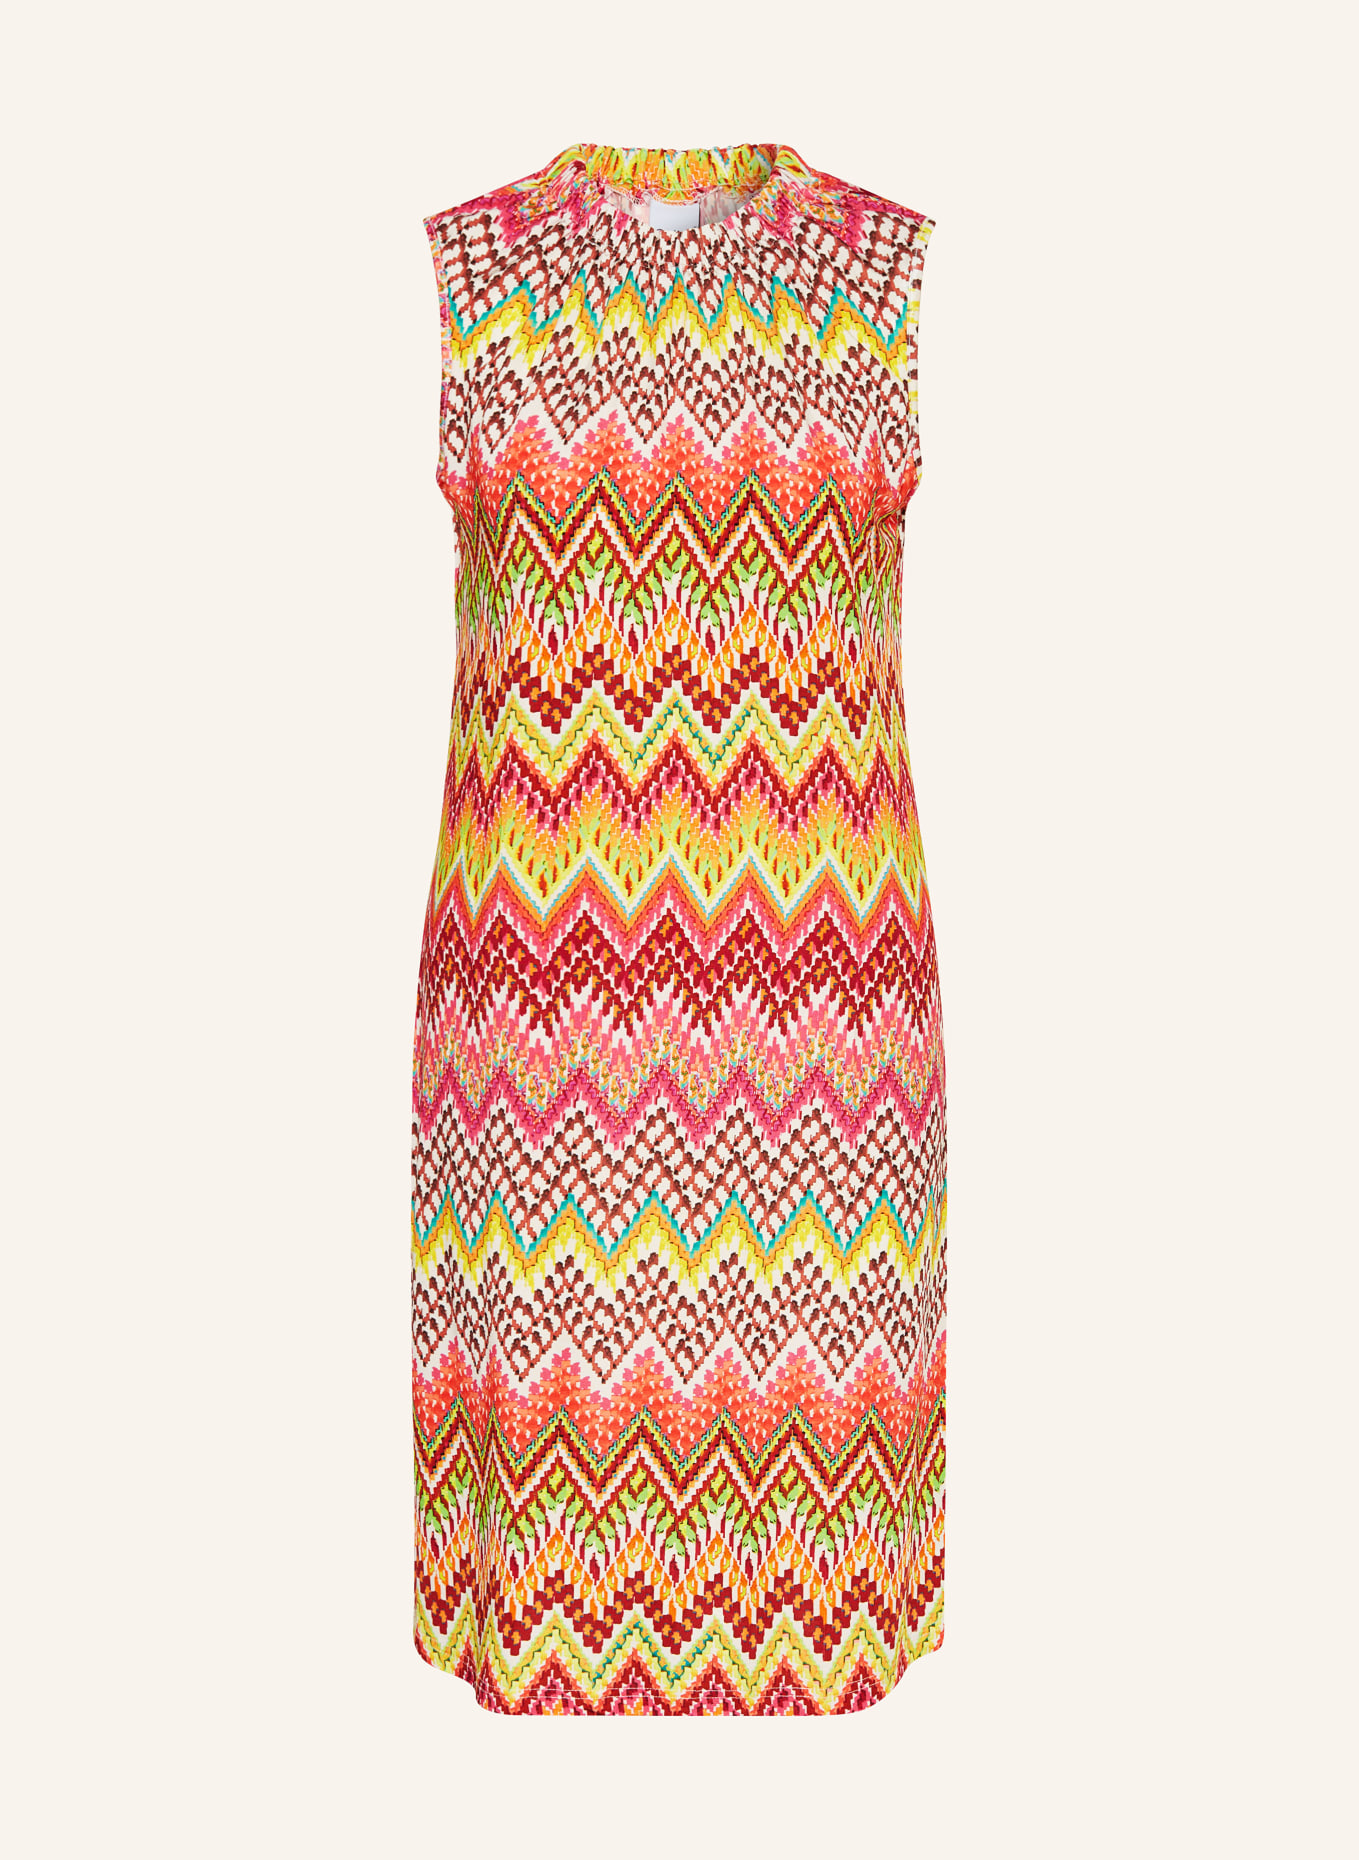 TONNO & PANNA Kleid, Farbe: ORANGE/ GELB/ PINK (Bild 1)